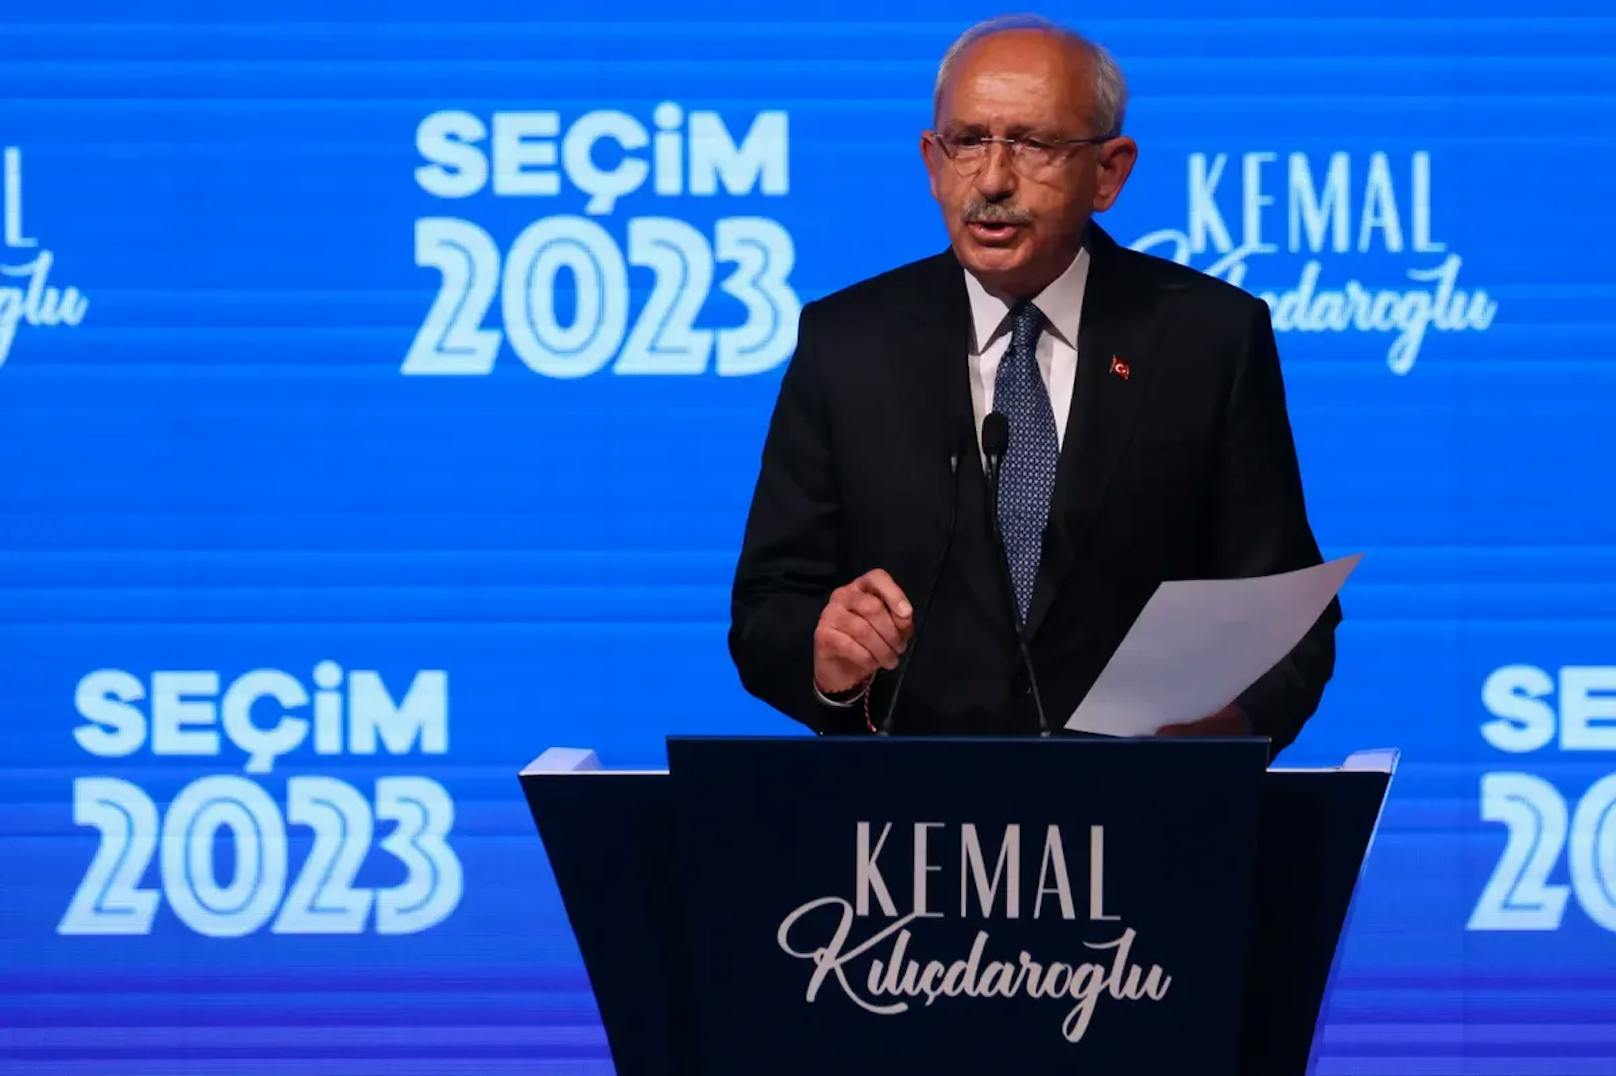 Türkei-Wahl: "Stichwahl wird für Opposition schwierig"